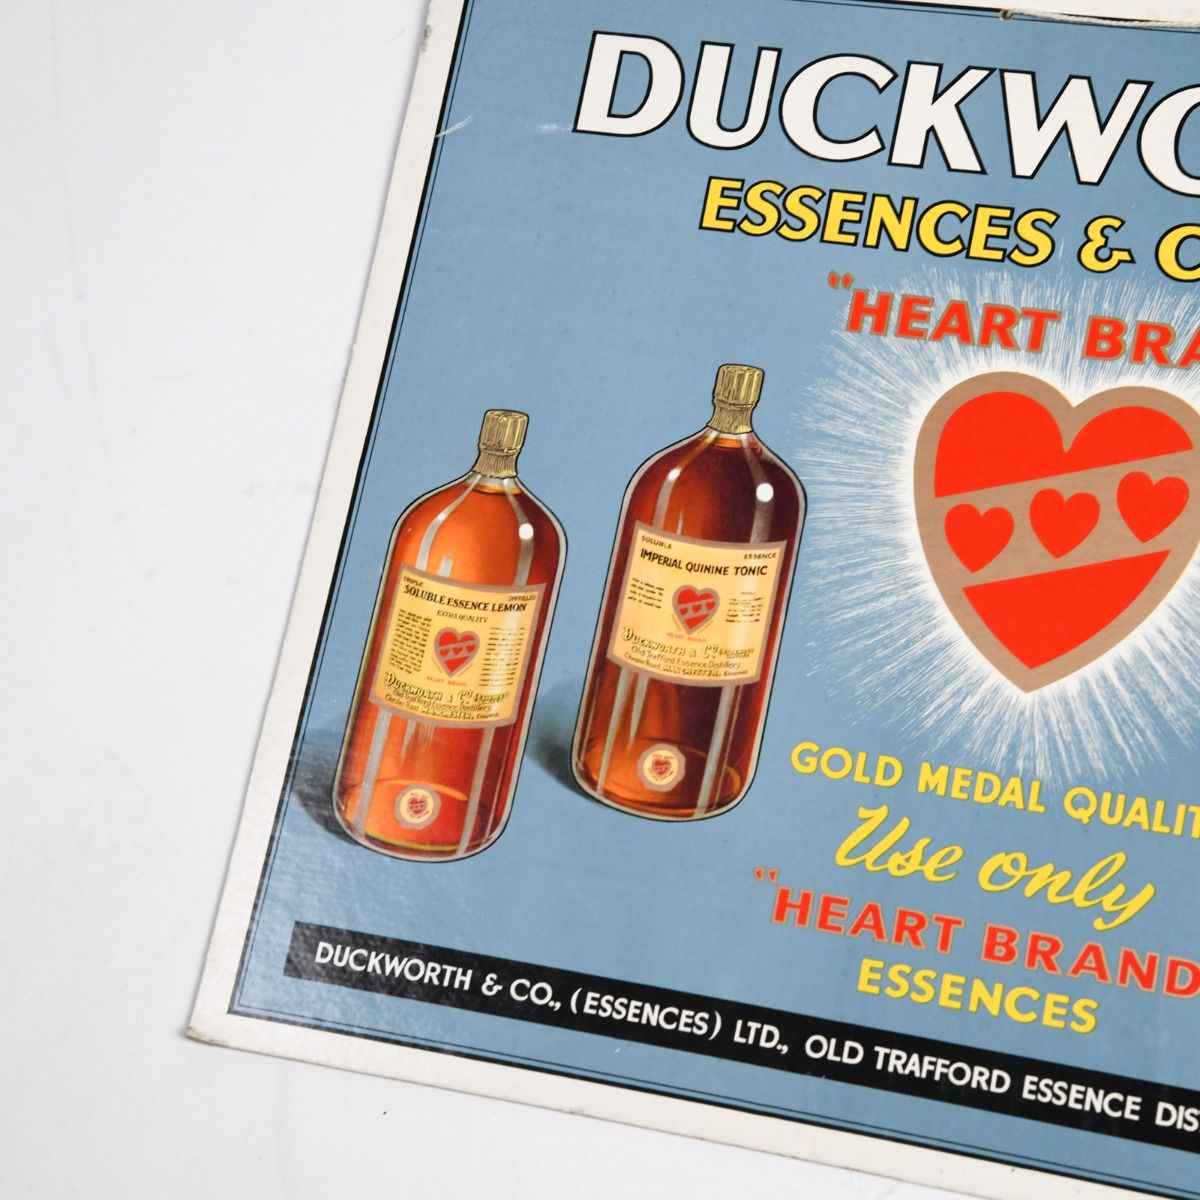 Vintage 1950s Duckworths Essences & Colours Shop Display Show Card